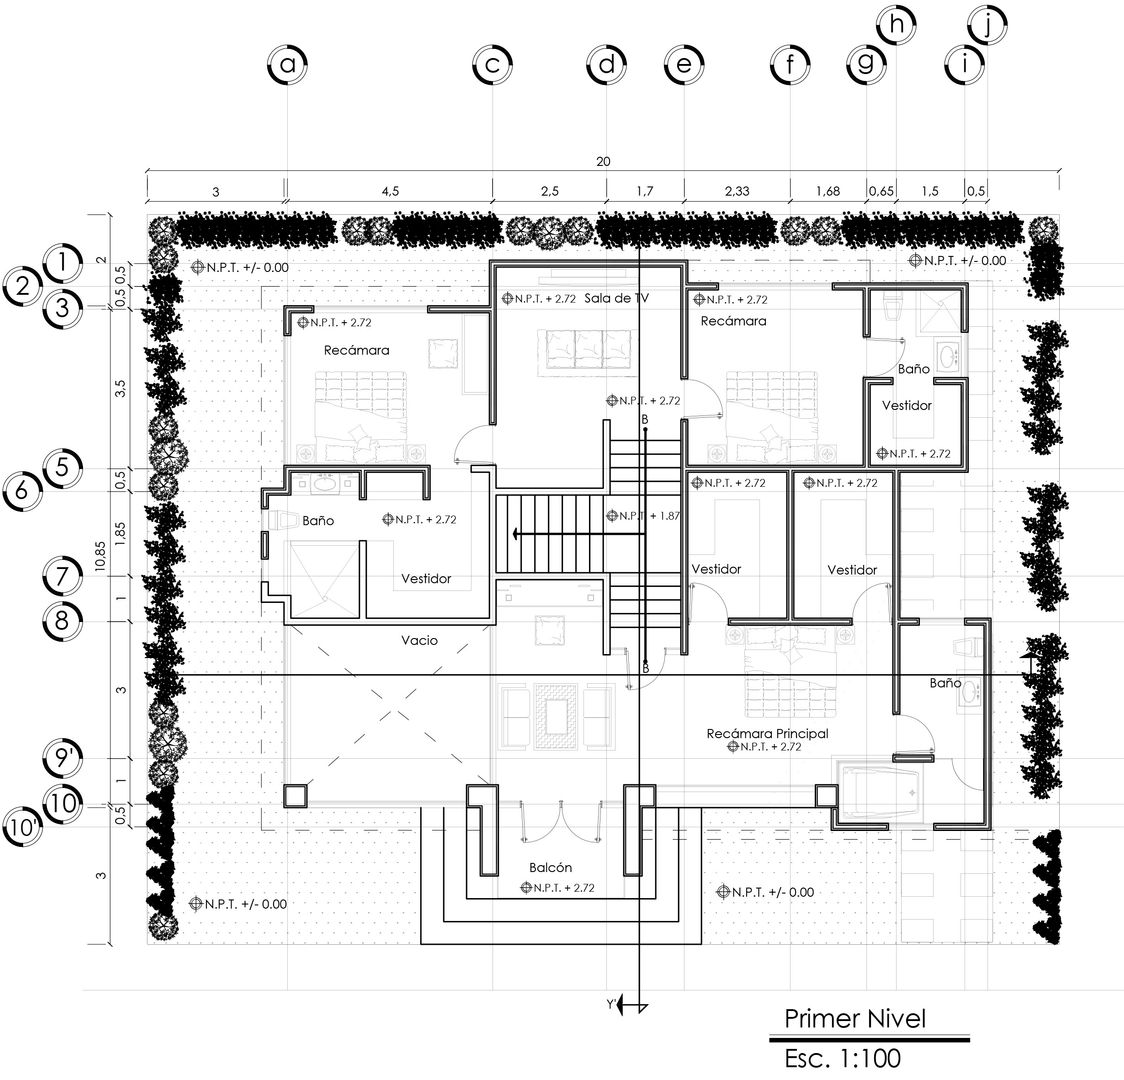 planos arquitectónicos (primer nivel) Calapiz Arq